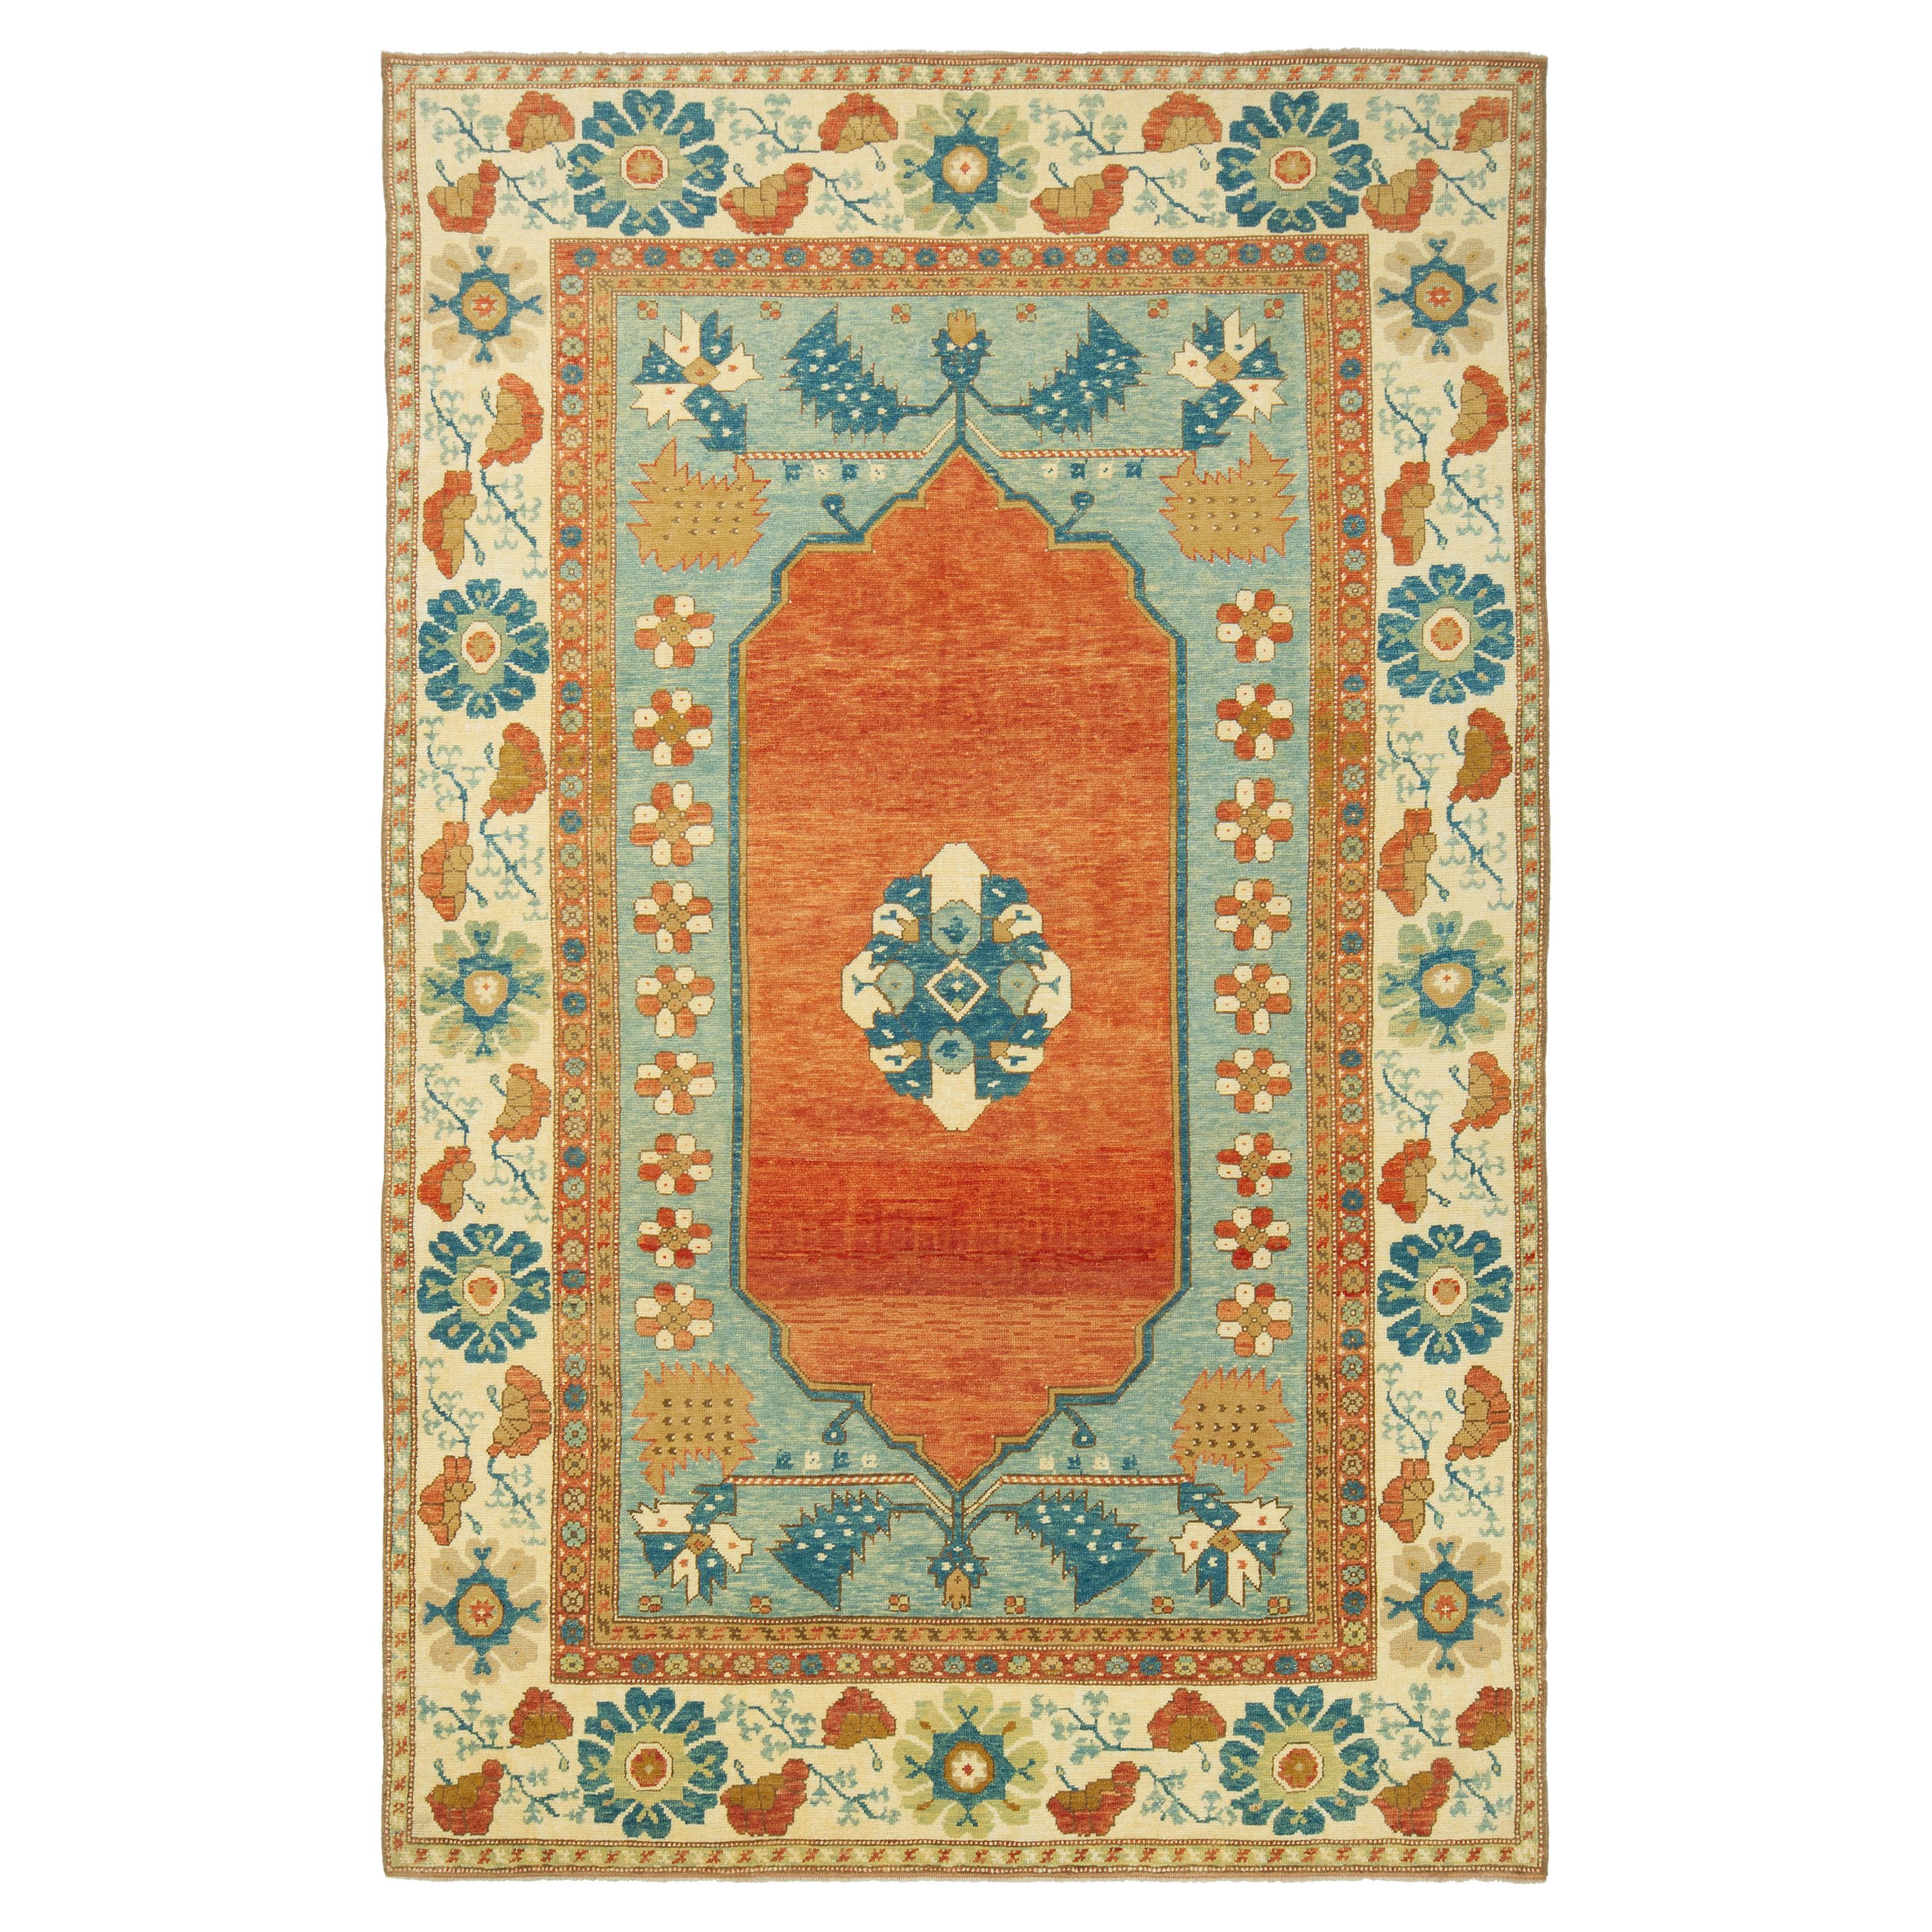 Ararat-Teppich Medaillon Teppich 18. Jahrhundert Anatolisches Türkisches Revival Teppich Naturfarben